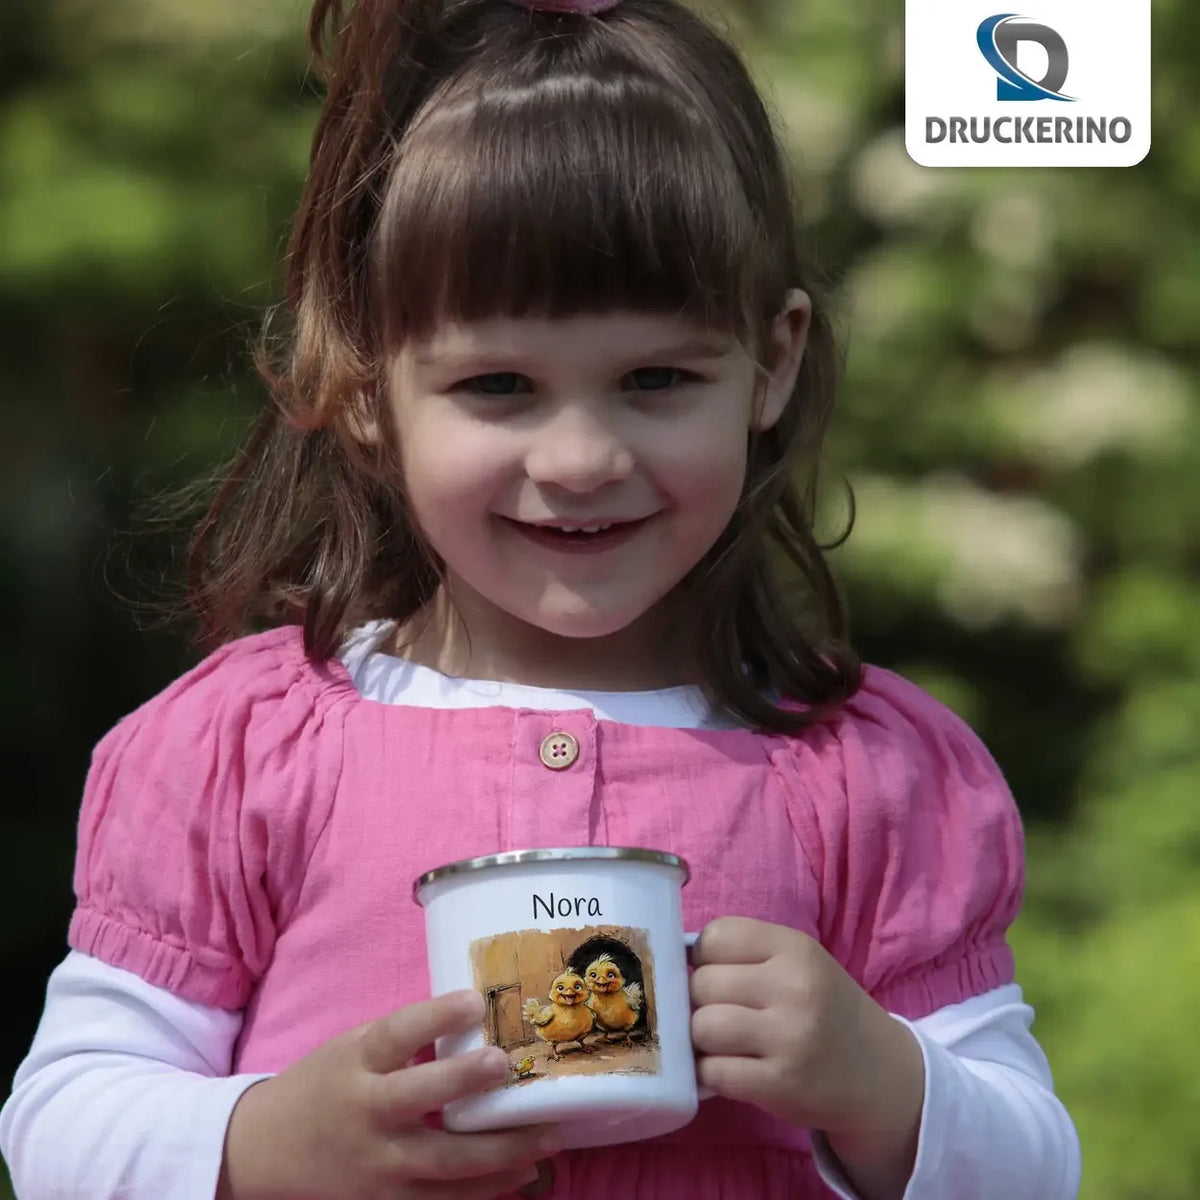 Tierfreunde-Emaille Tasse für Kinder personalisiert Emailletasse Druckerino   